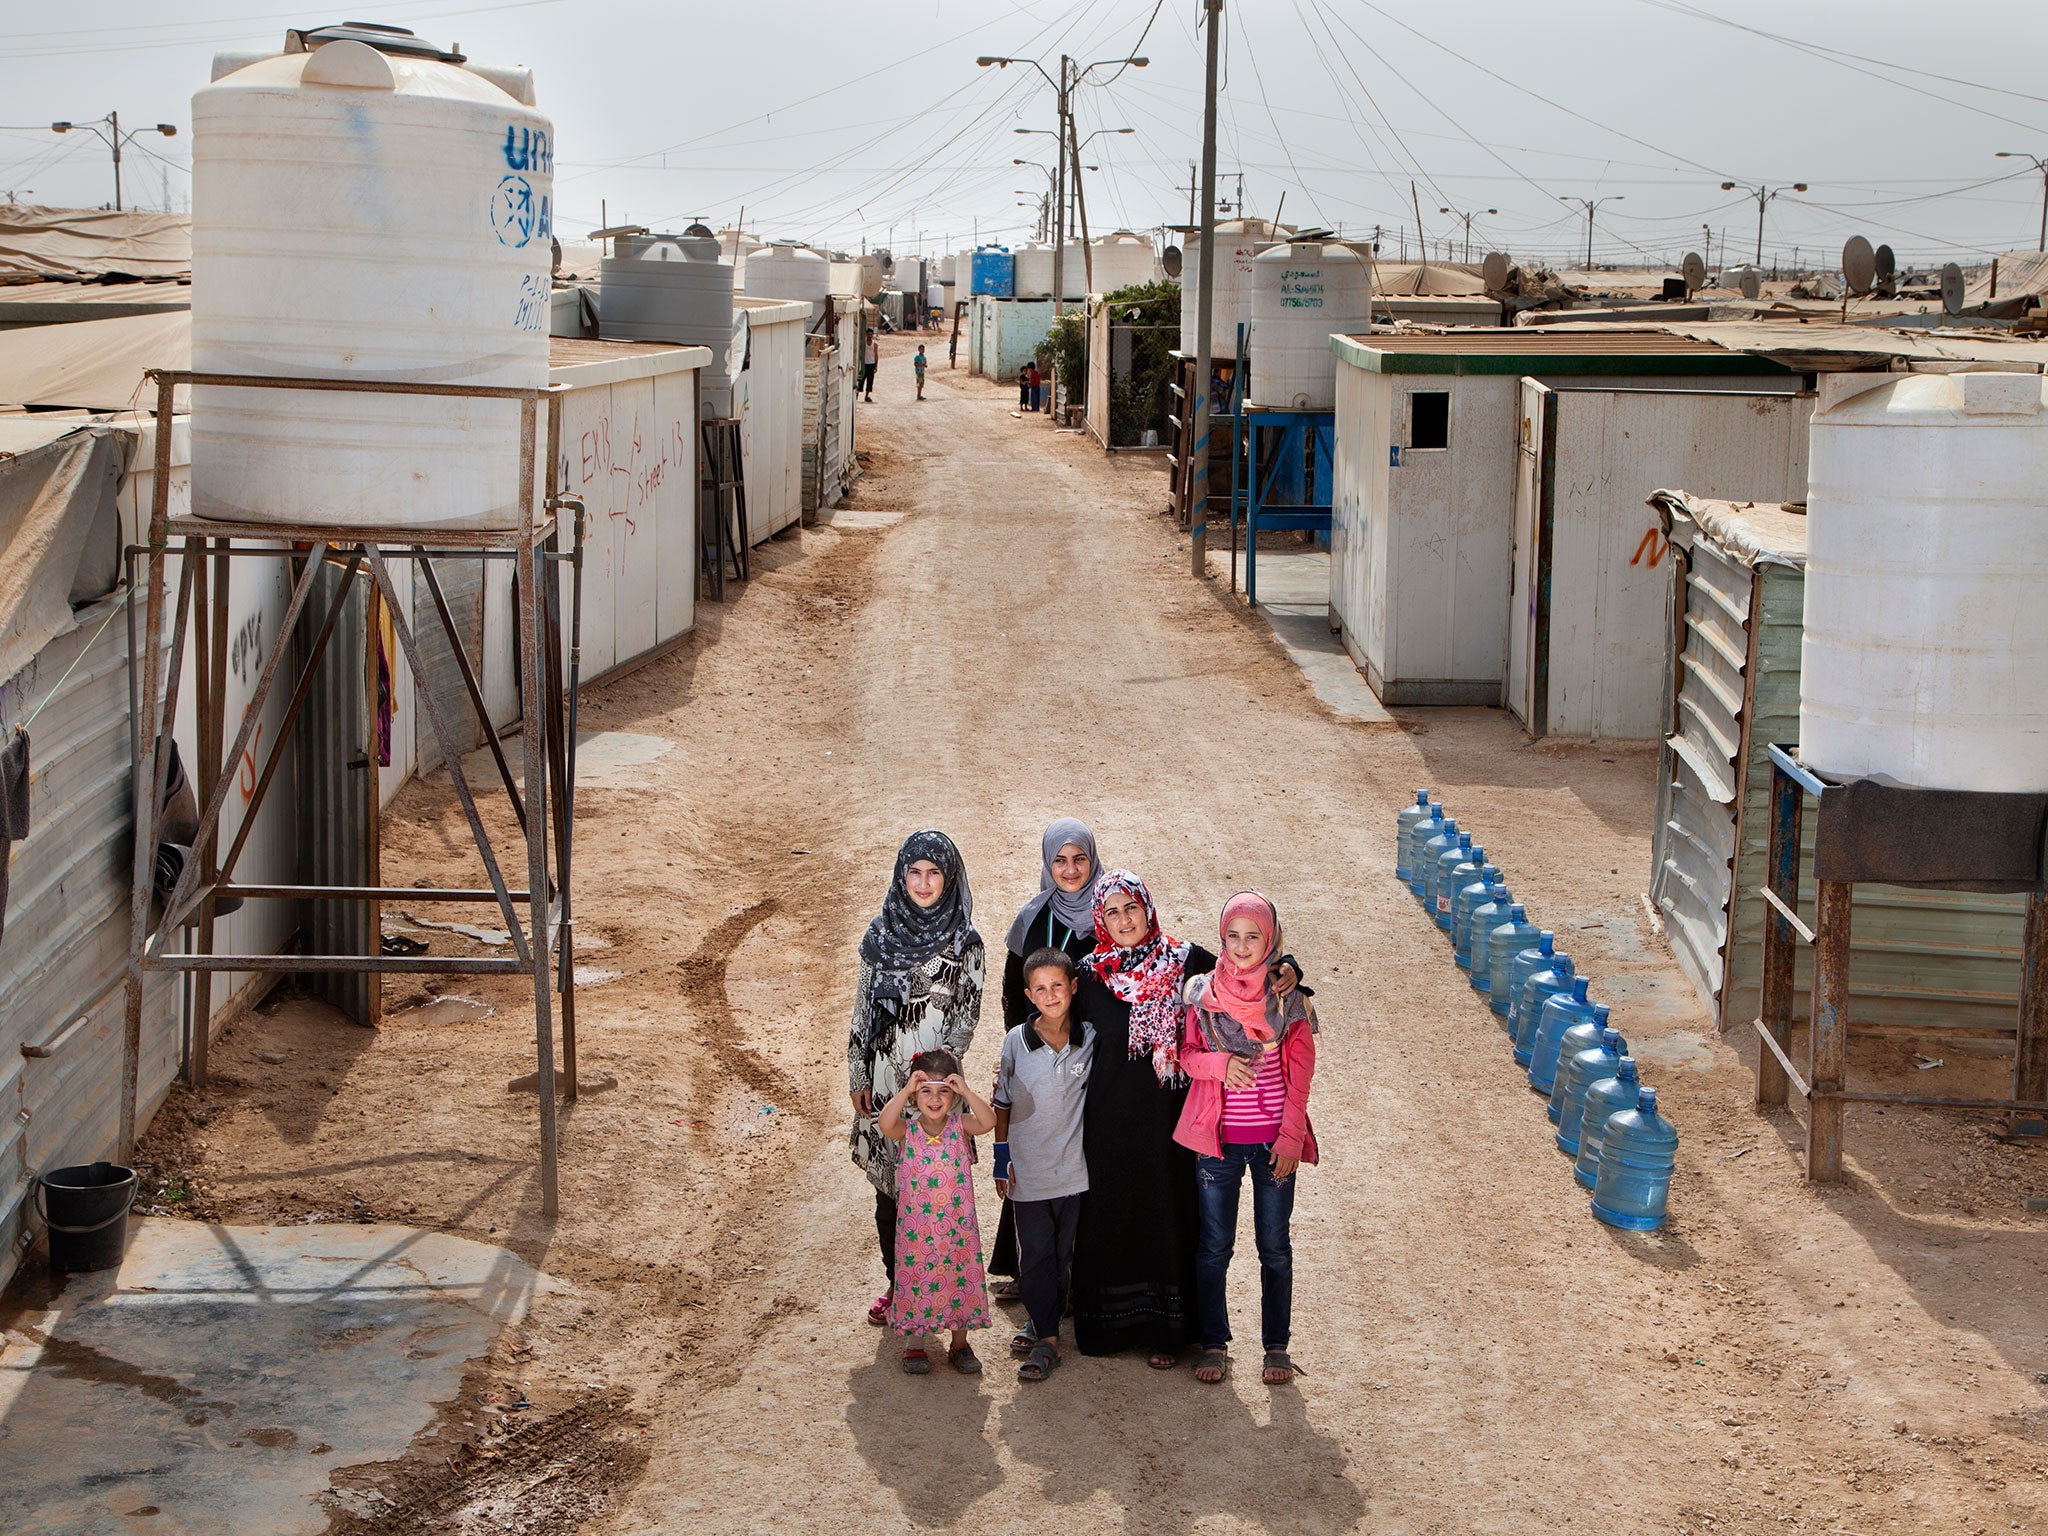 Amal Al Hoshan, a teacher, and her five children live in Zaiatari refugee camp in Jordan